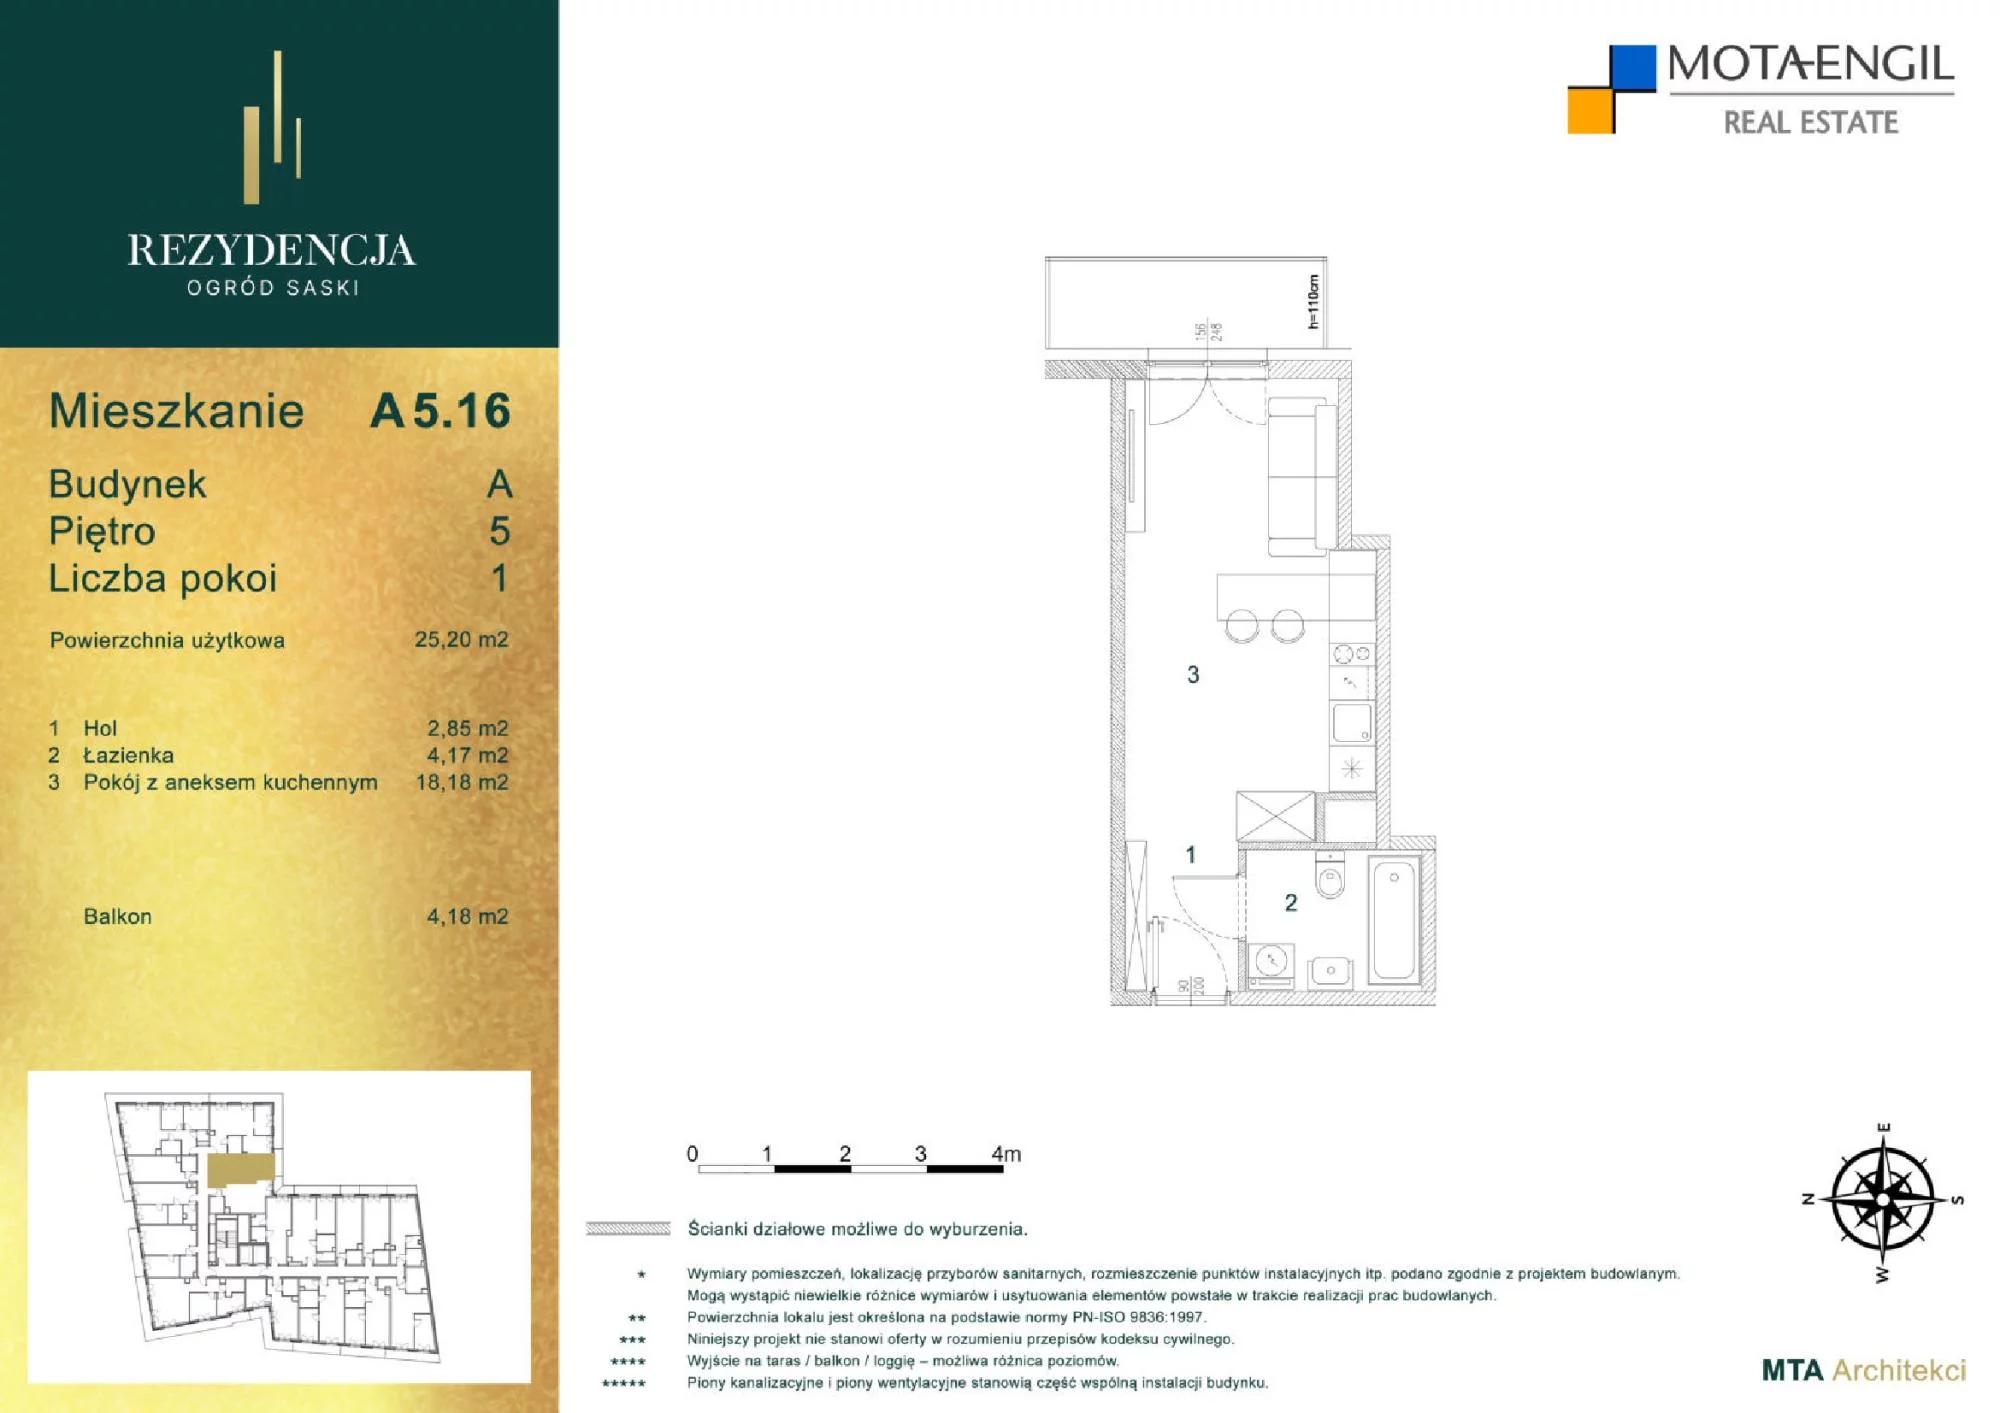 Mieszkanie 25,20 m², piętro 5, oferta nr A5.16, Rezydencja Ogród Saski, Lublin, Wieniawa, ul. Jasna 7, 7A